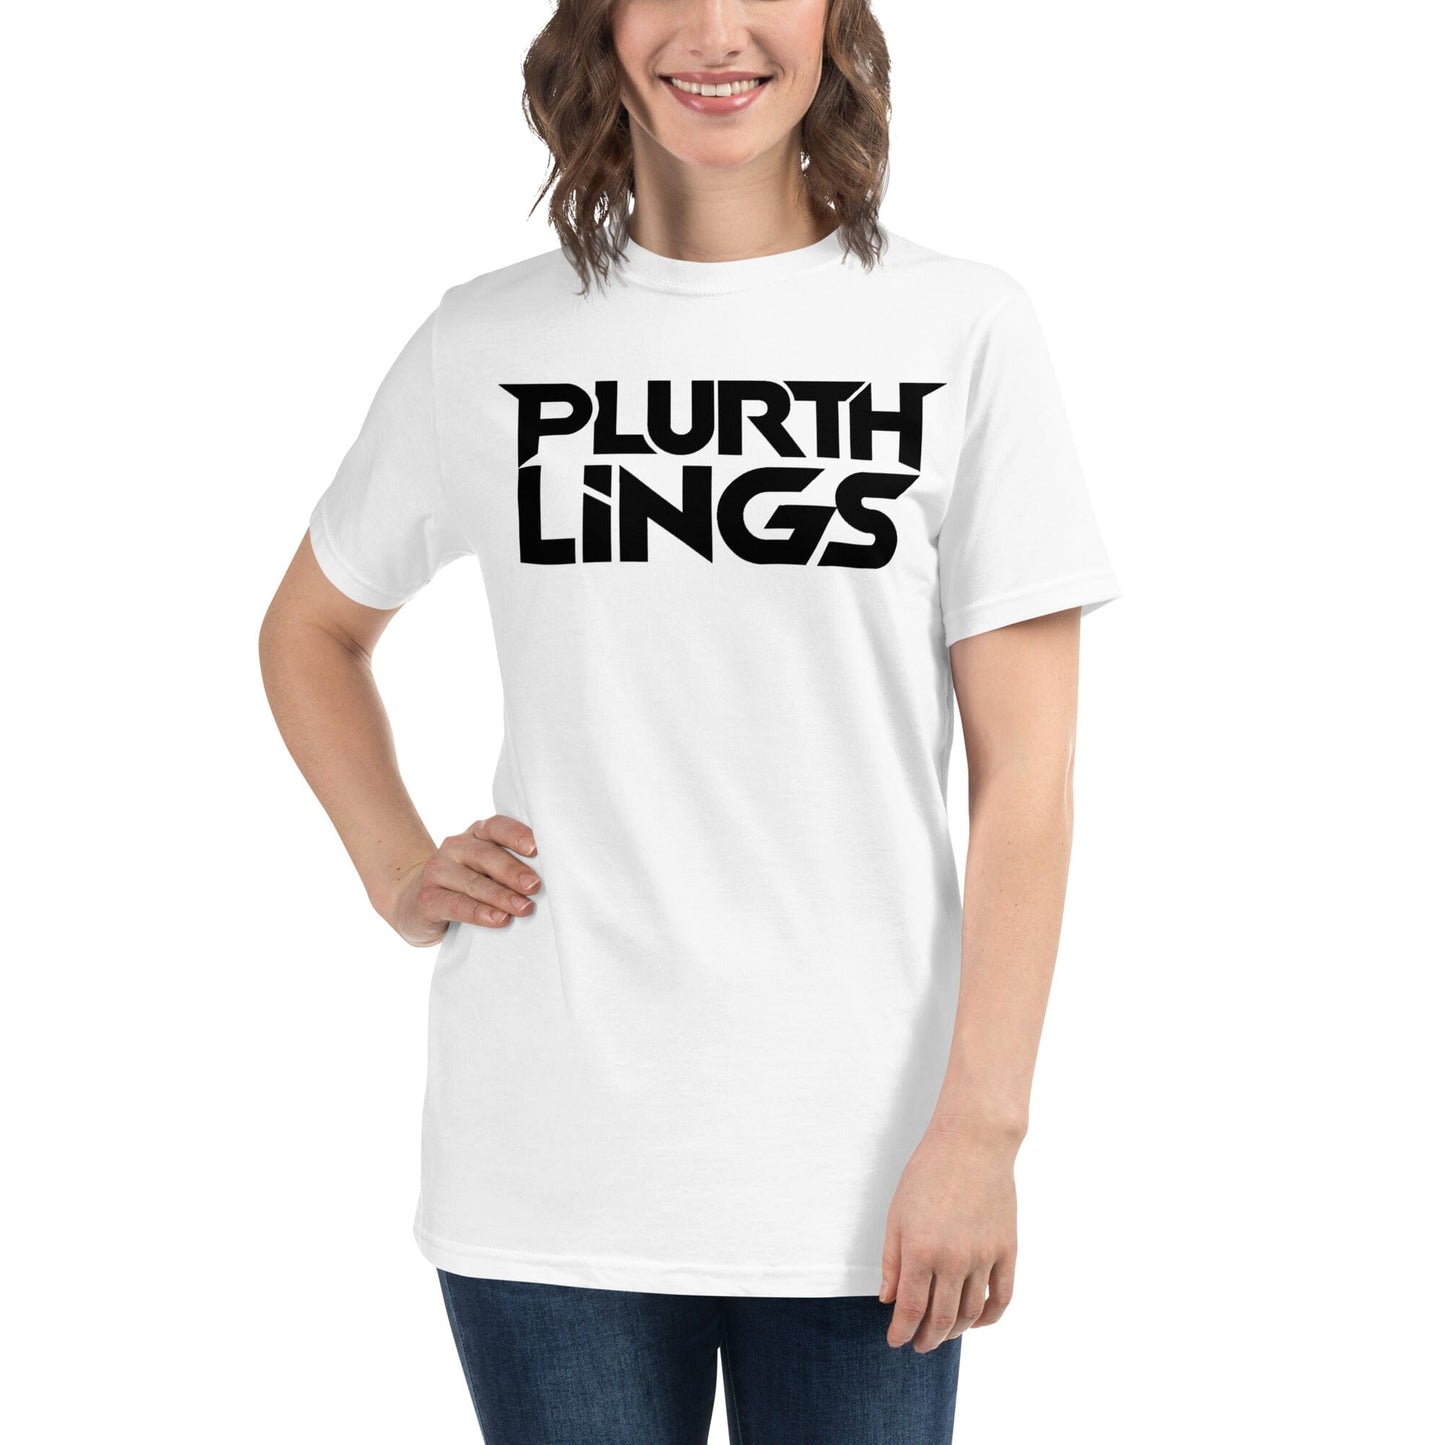 Plurthlings Organic Logo T-Shirt PLURTHLINGS White S 